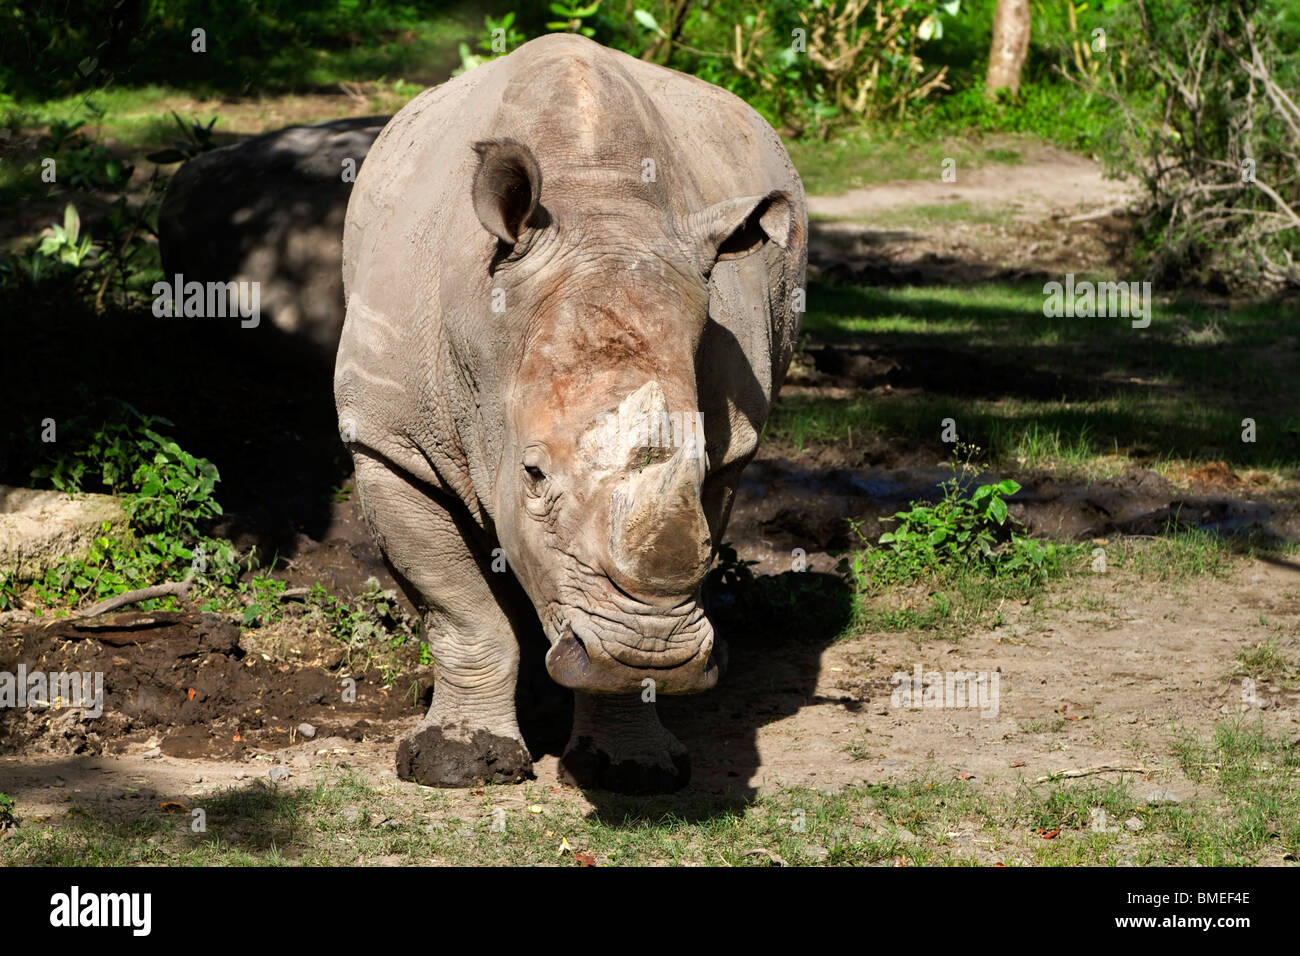 White Rhinoceros or Square-lipped rhinoceros (Ceratotherium simum) Stock Photo